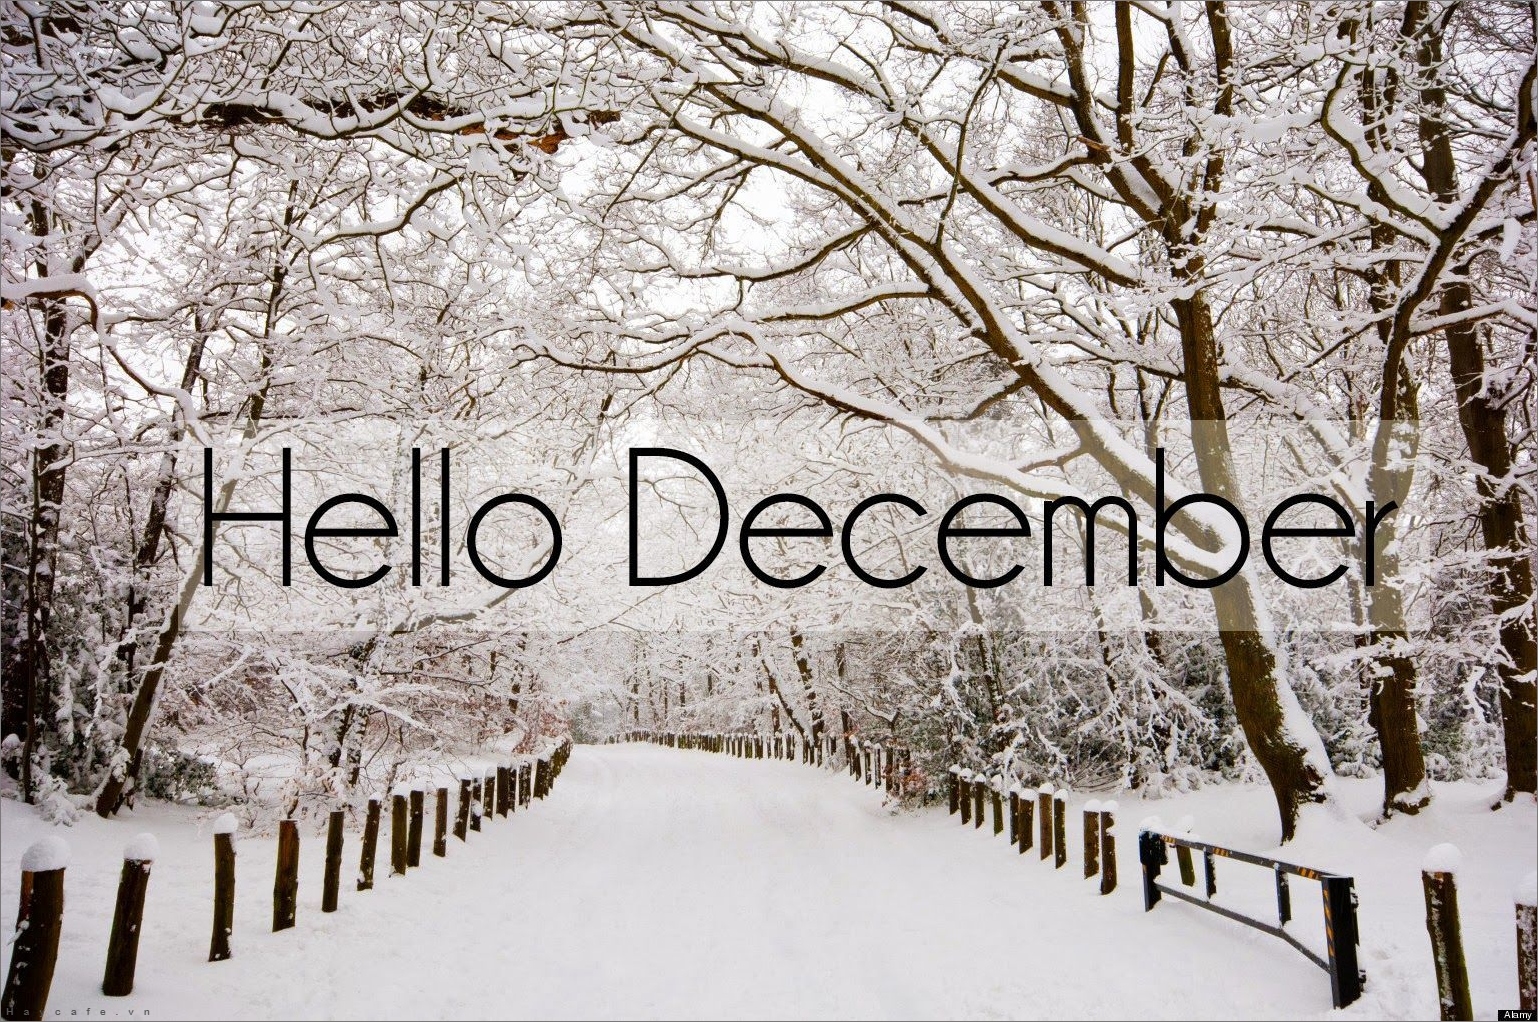 Hình ảnh về tháng 12 những hình ảnh đẹp về mùa đông Noel